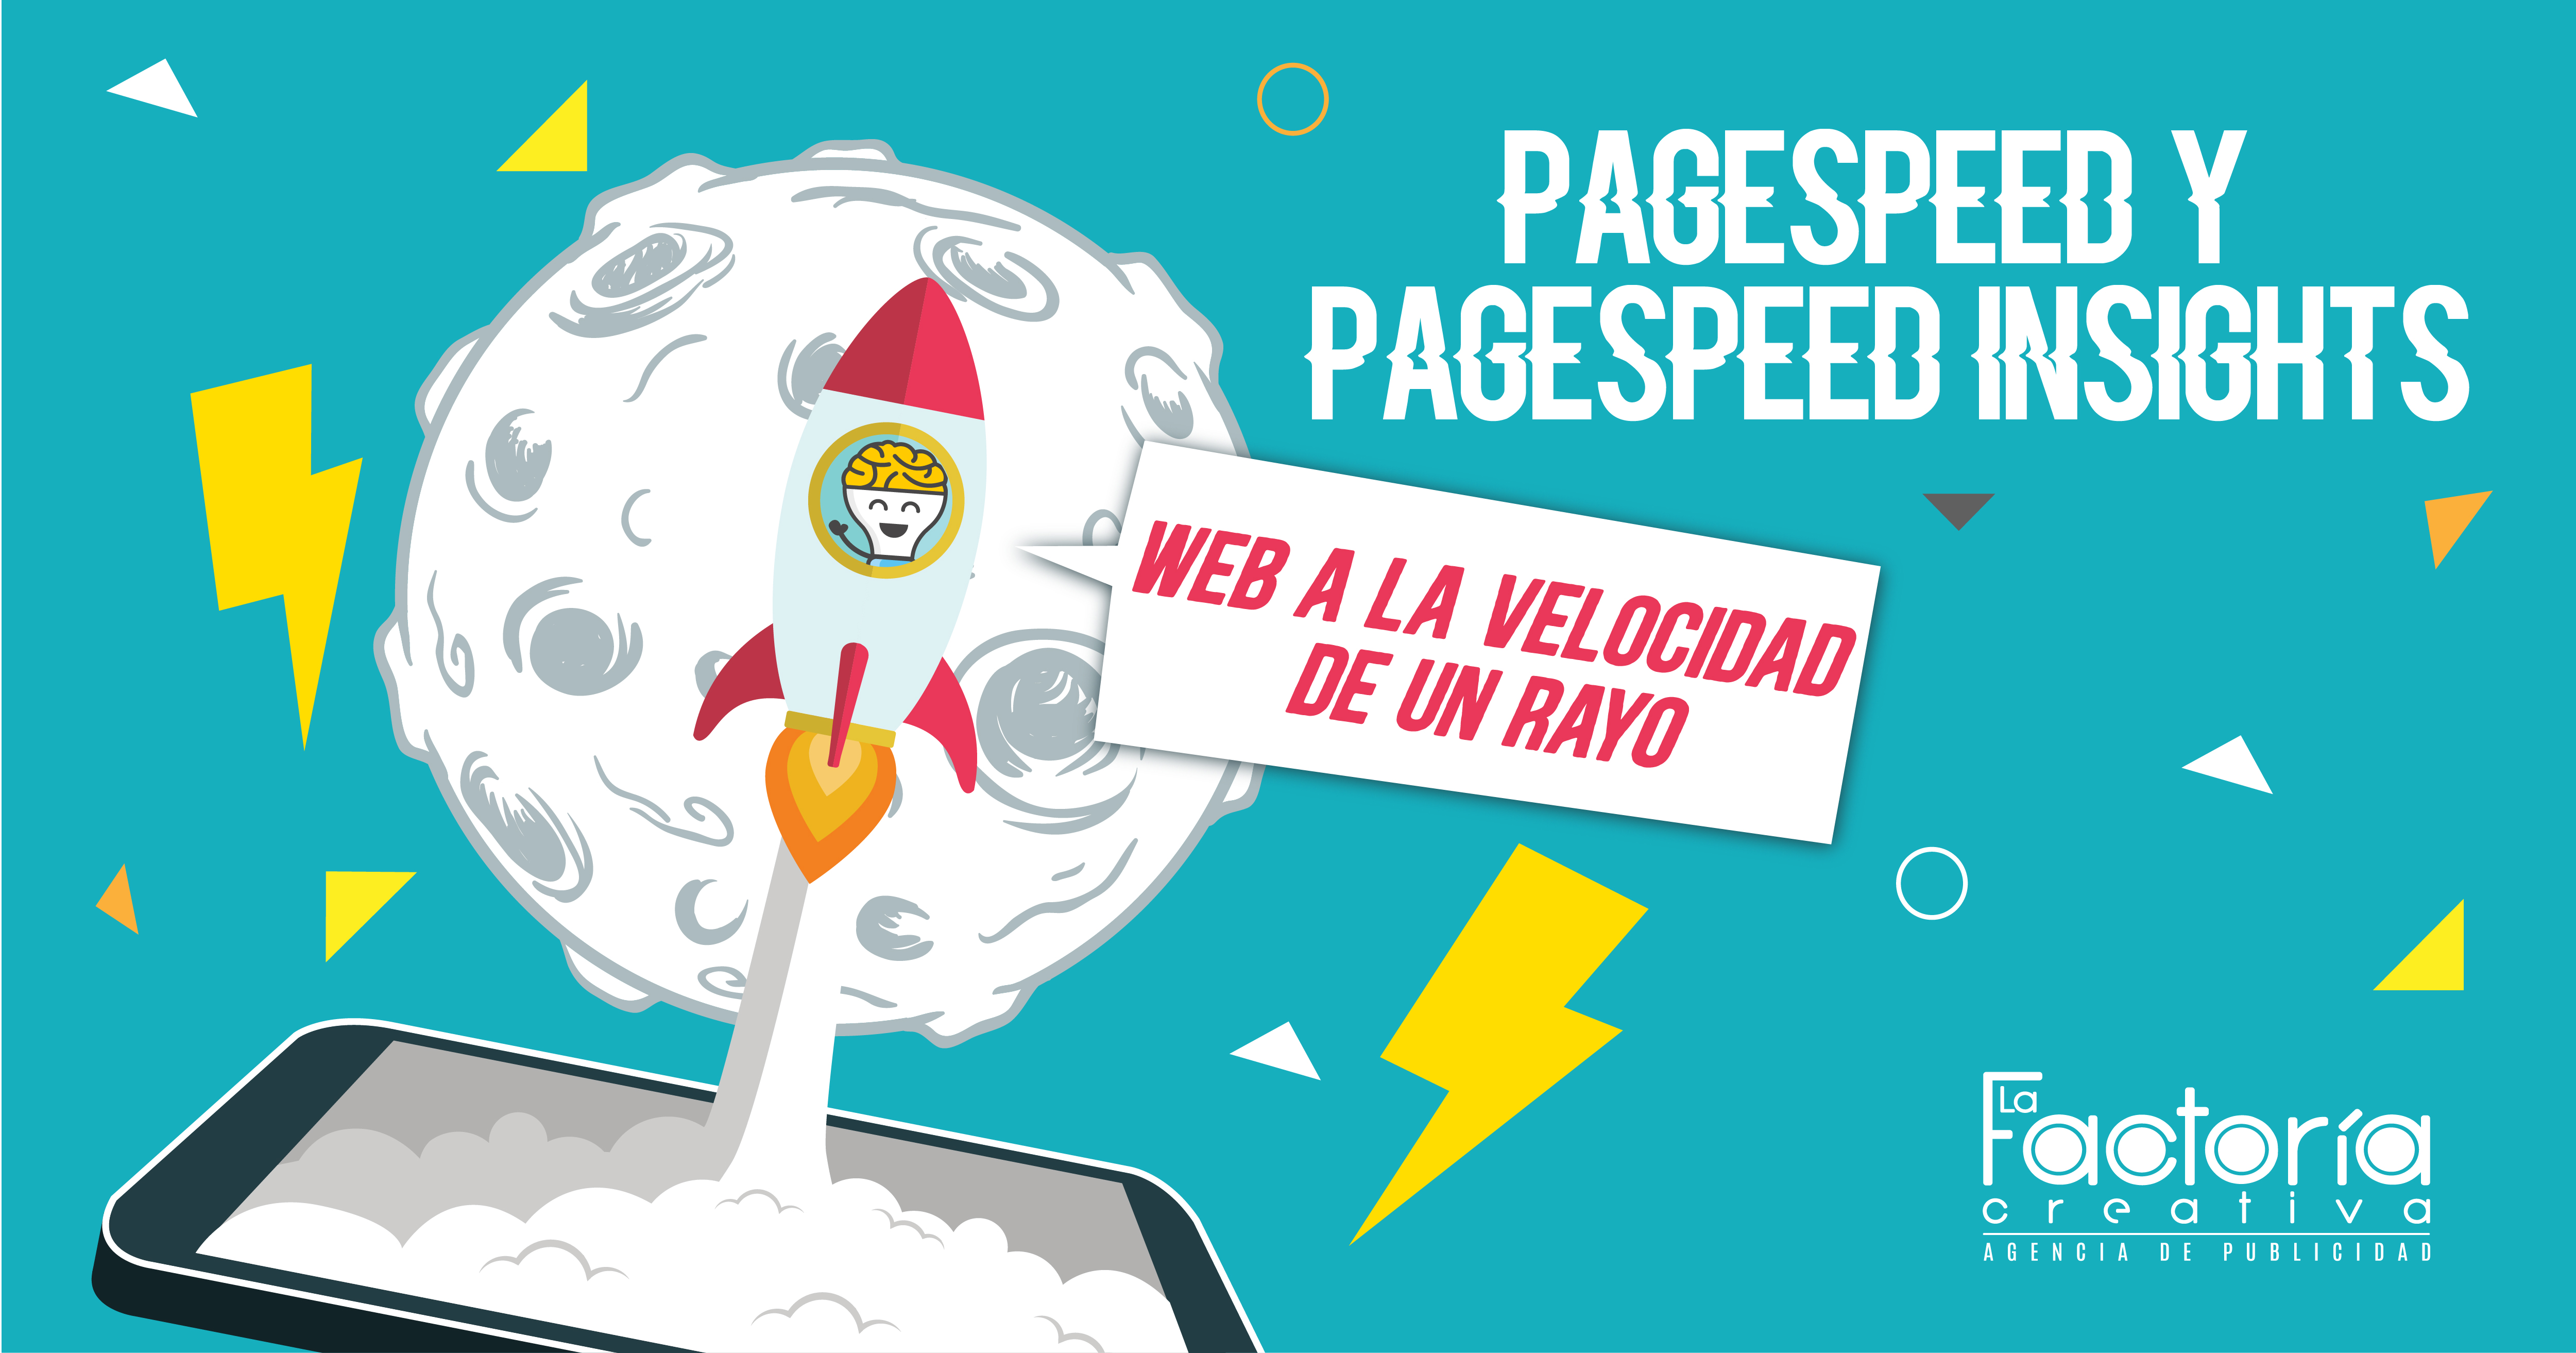 Pagespeed velocidad de carga en web